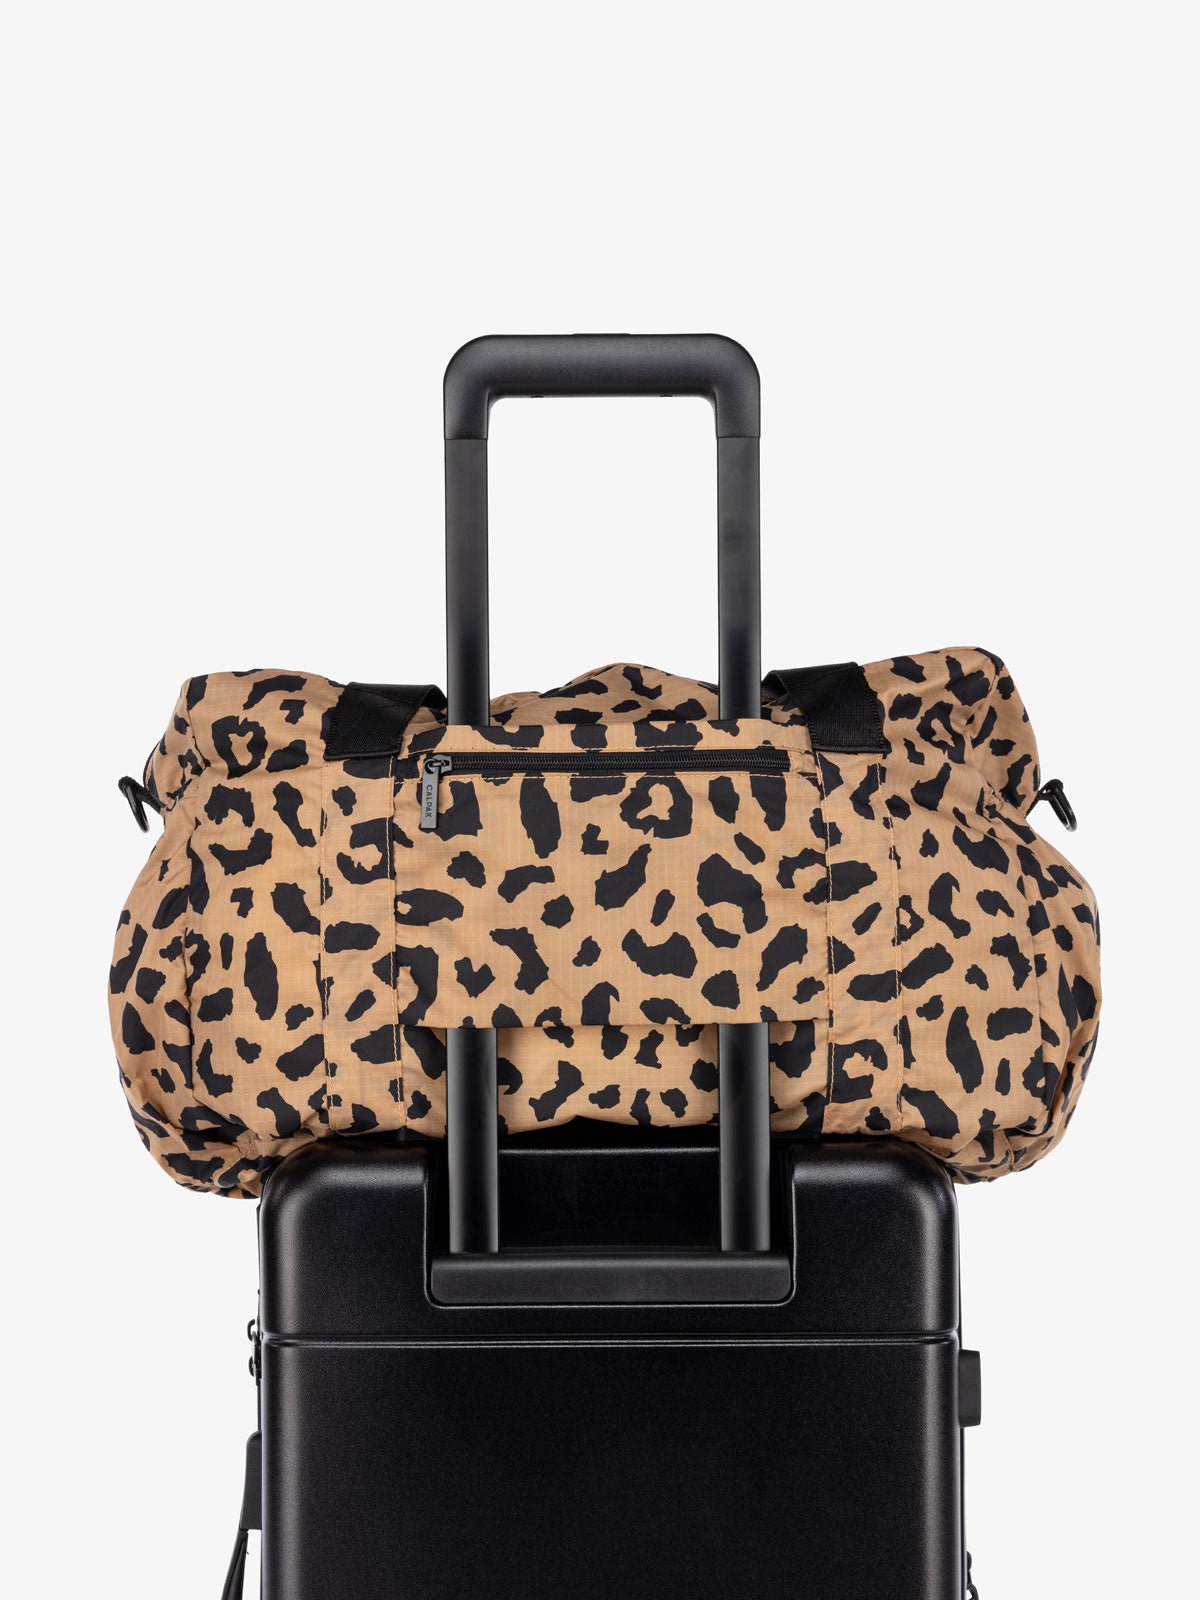 CALPAK nylon duffle bag lightweight for travel